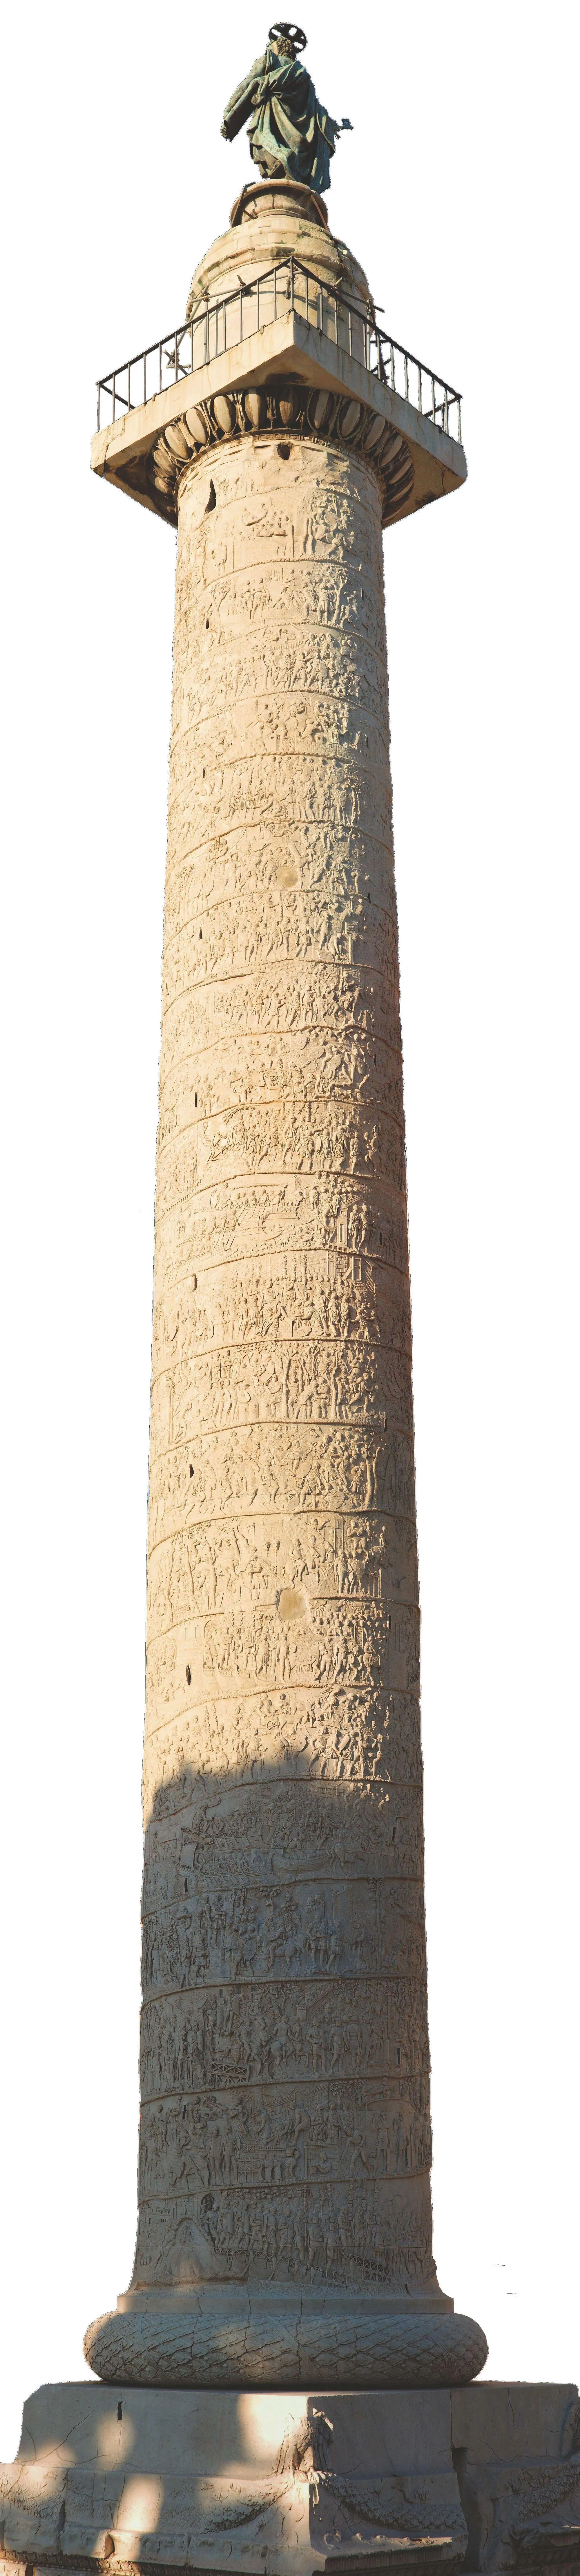 La colonne Trajane